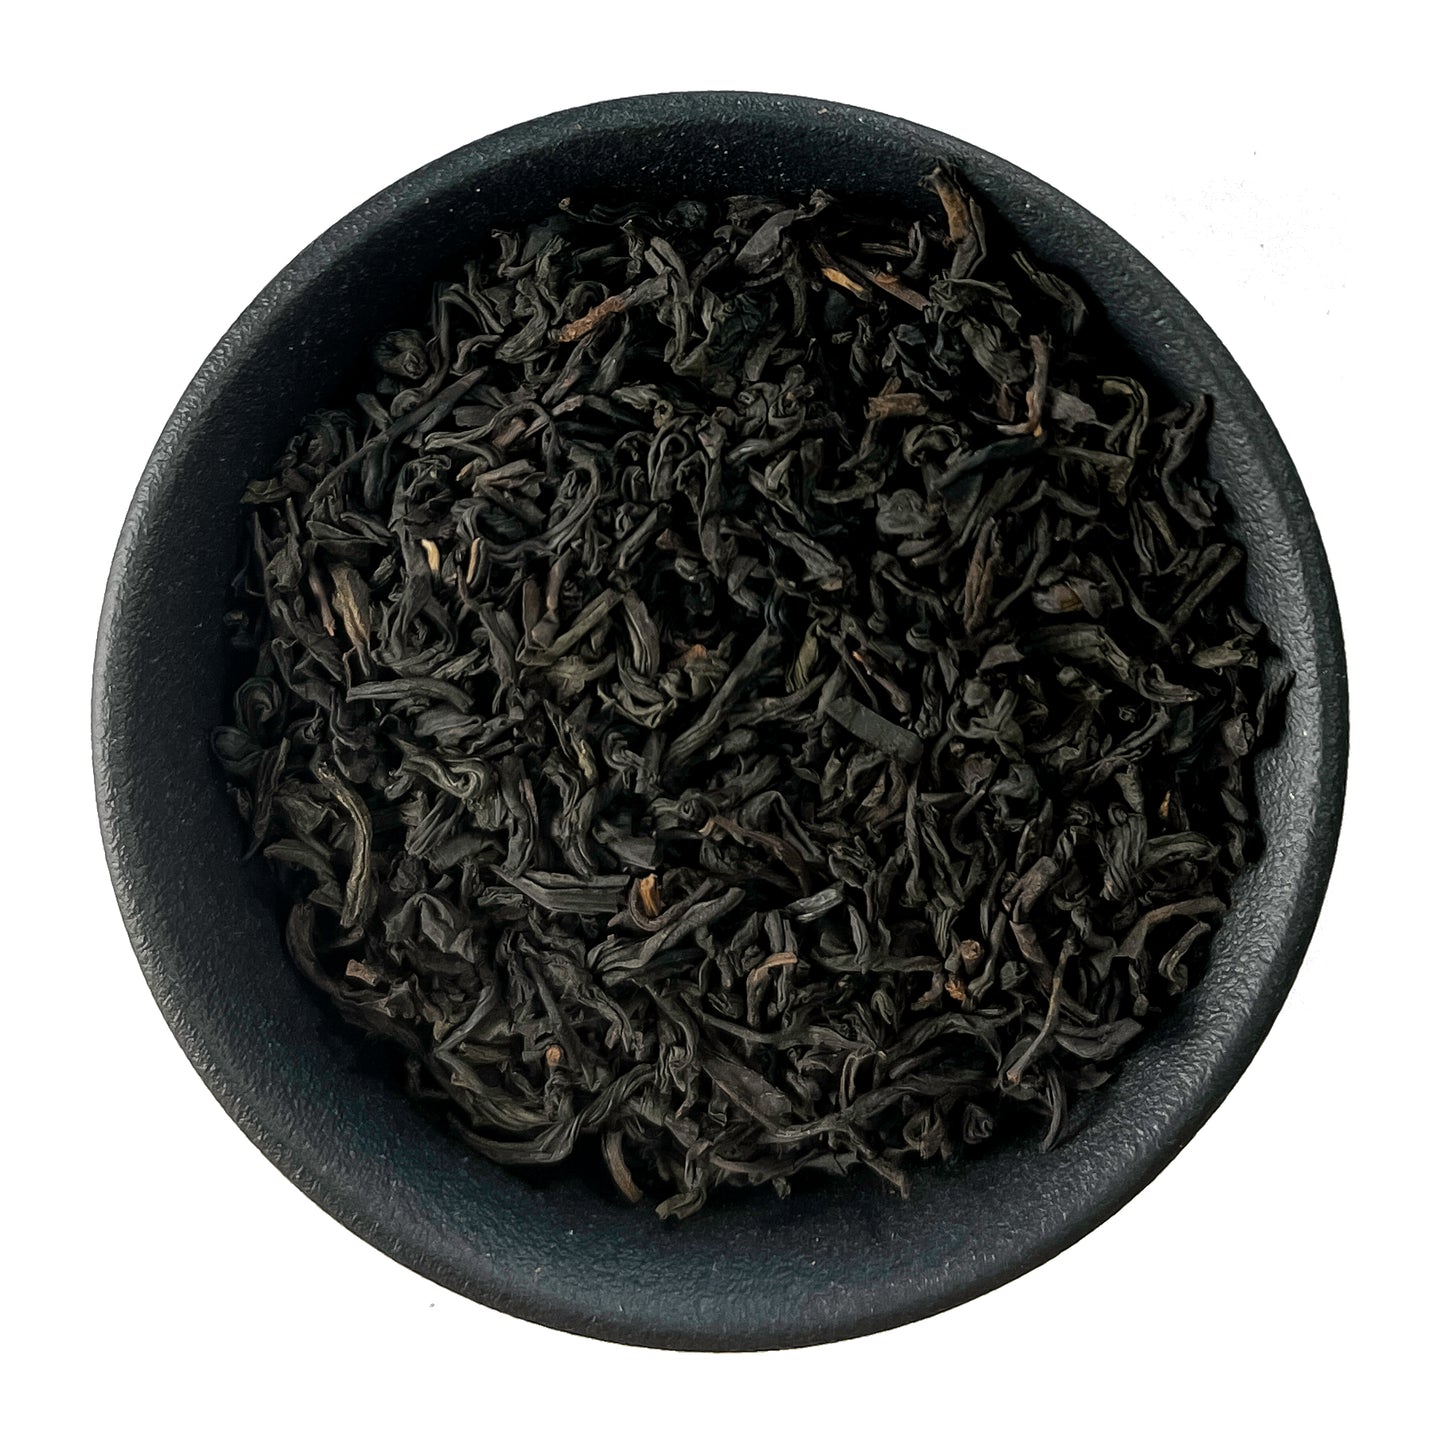 Lapsang Souchong Loose Leaf Tea, Organic